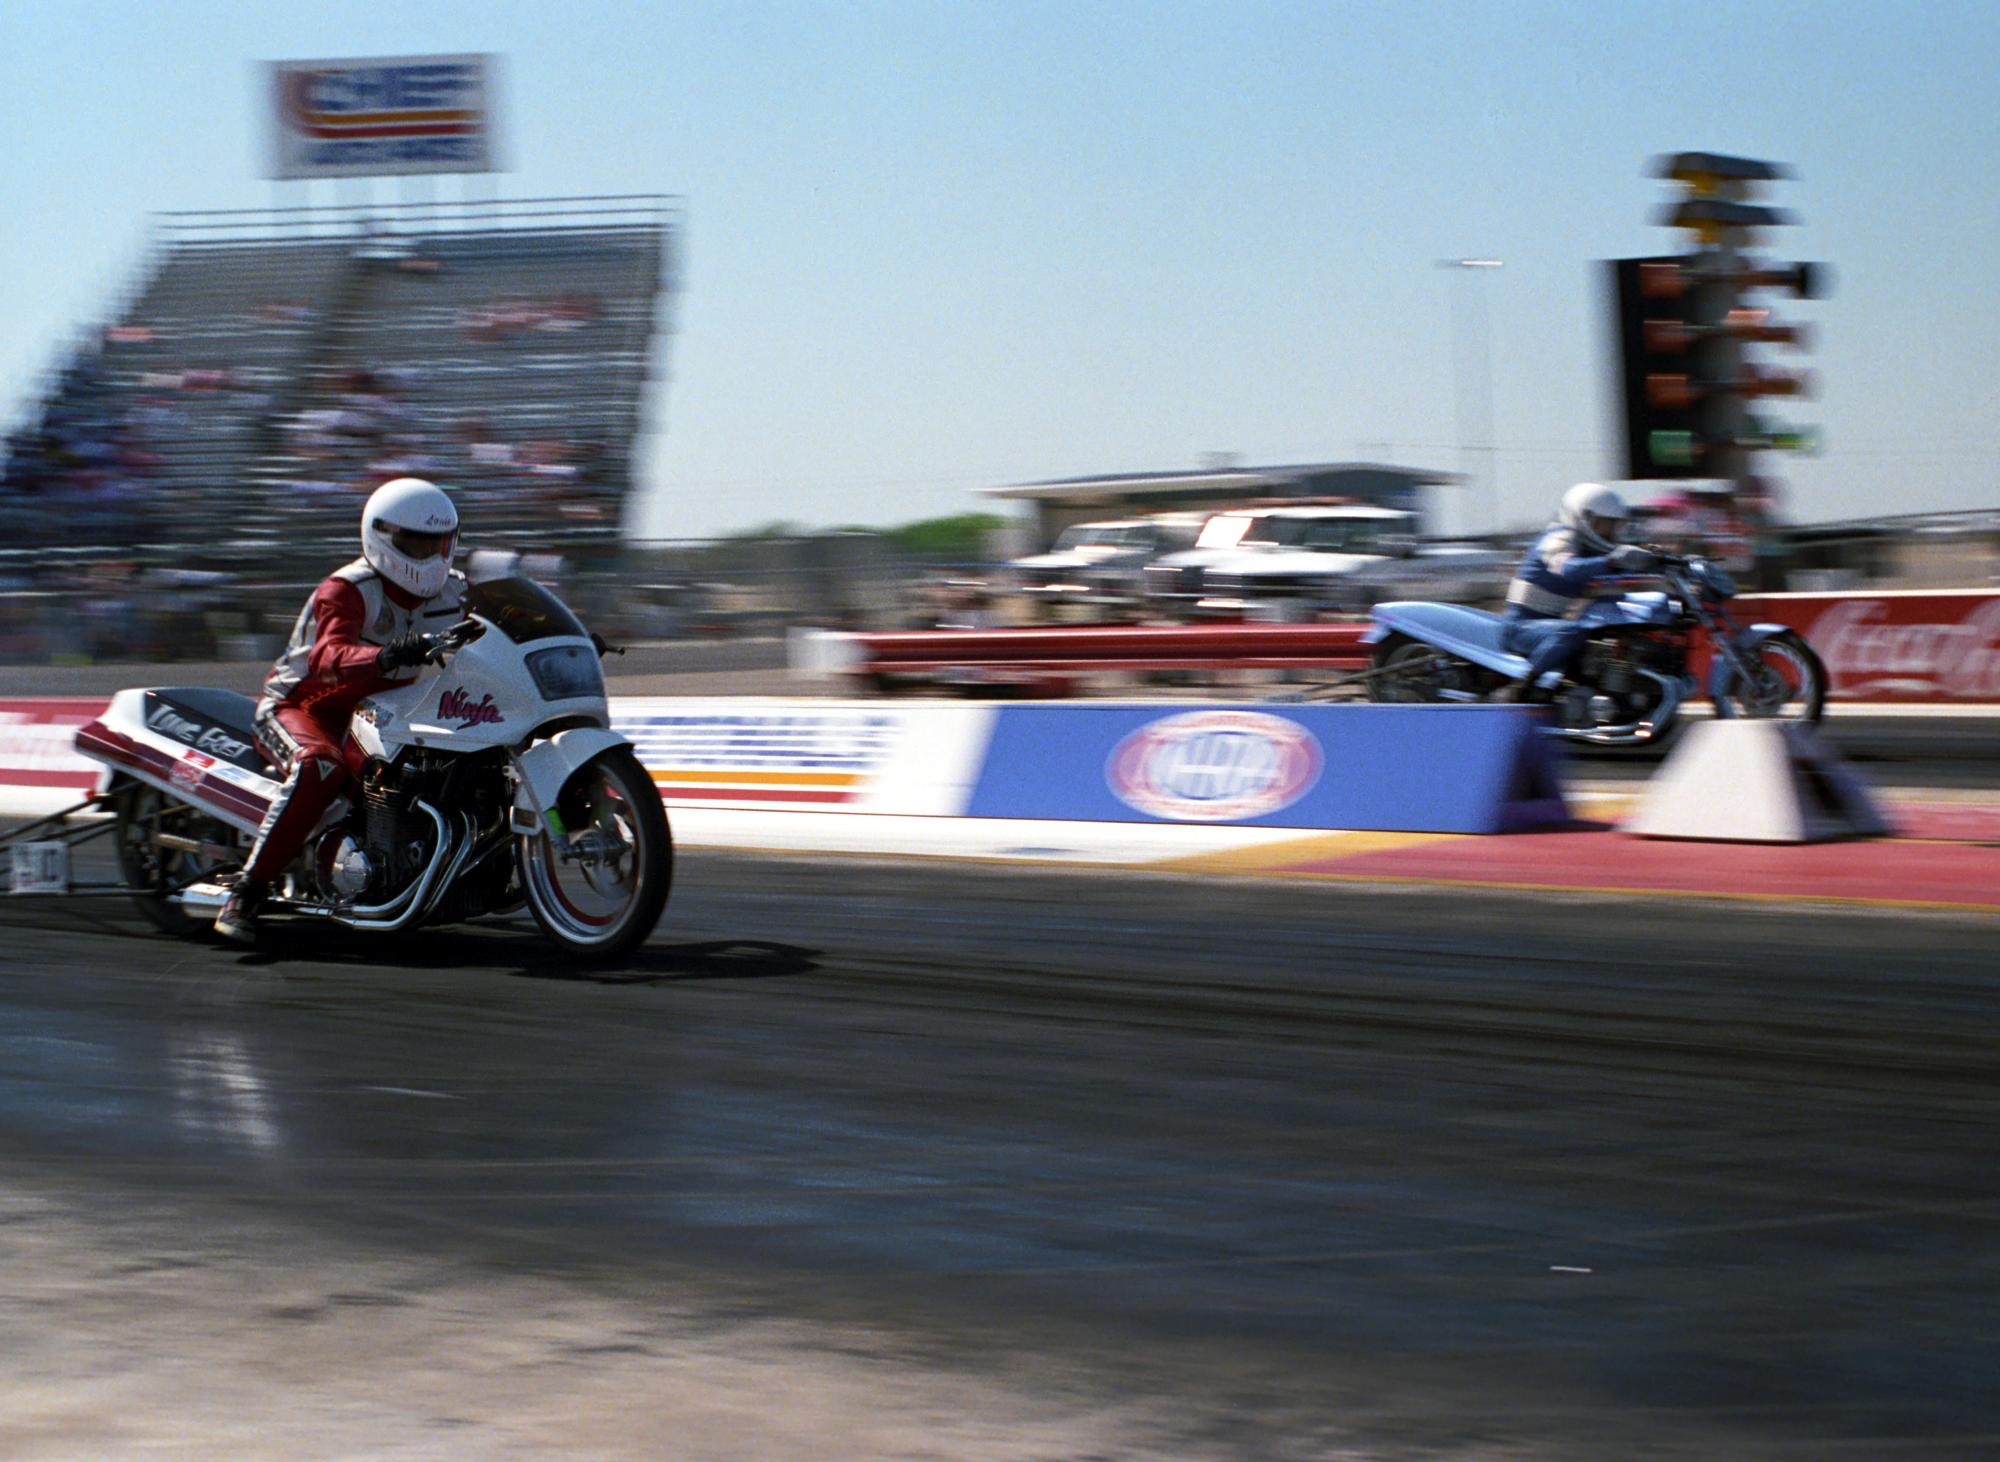 Texas Motor Drag Racing (1991) - Texas Motorcycle Drag Racing #5